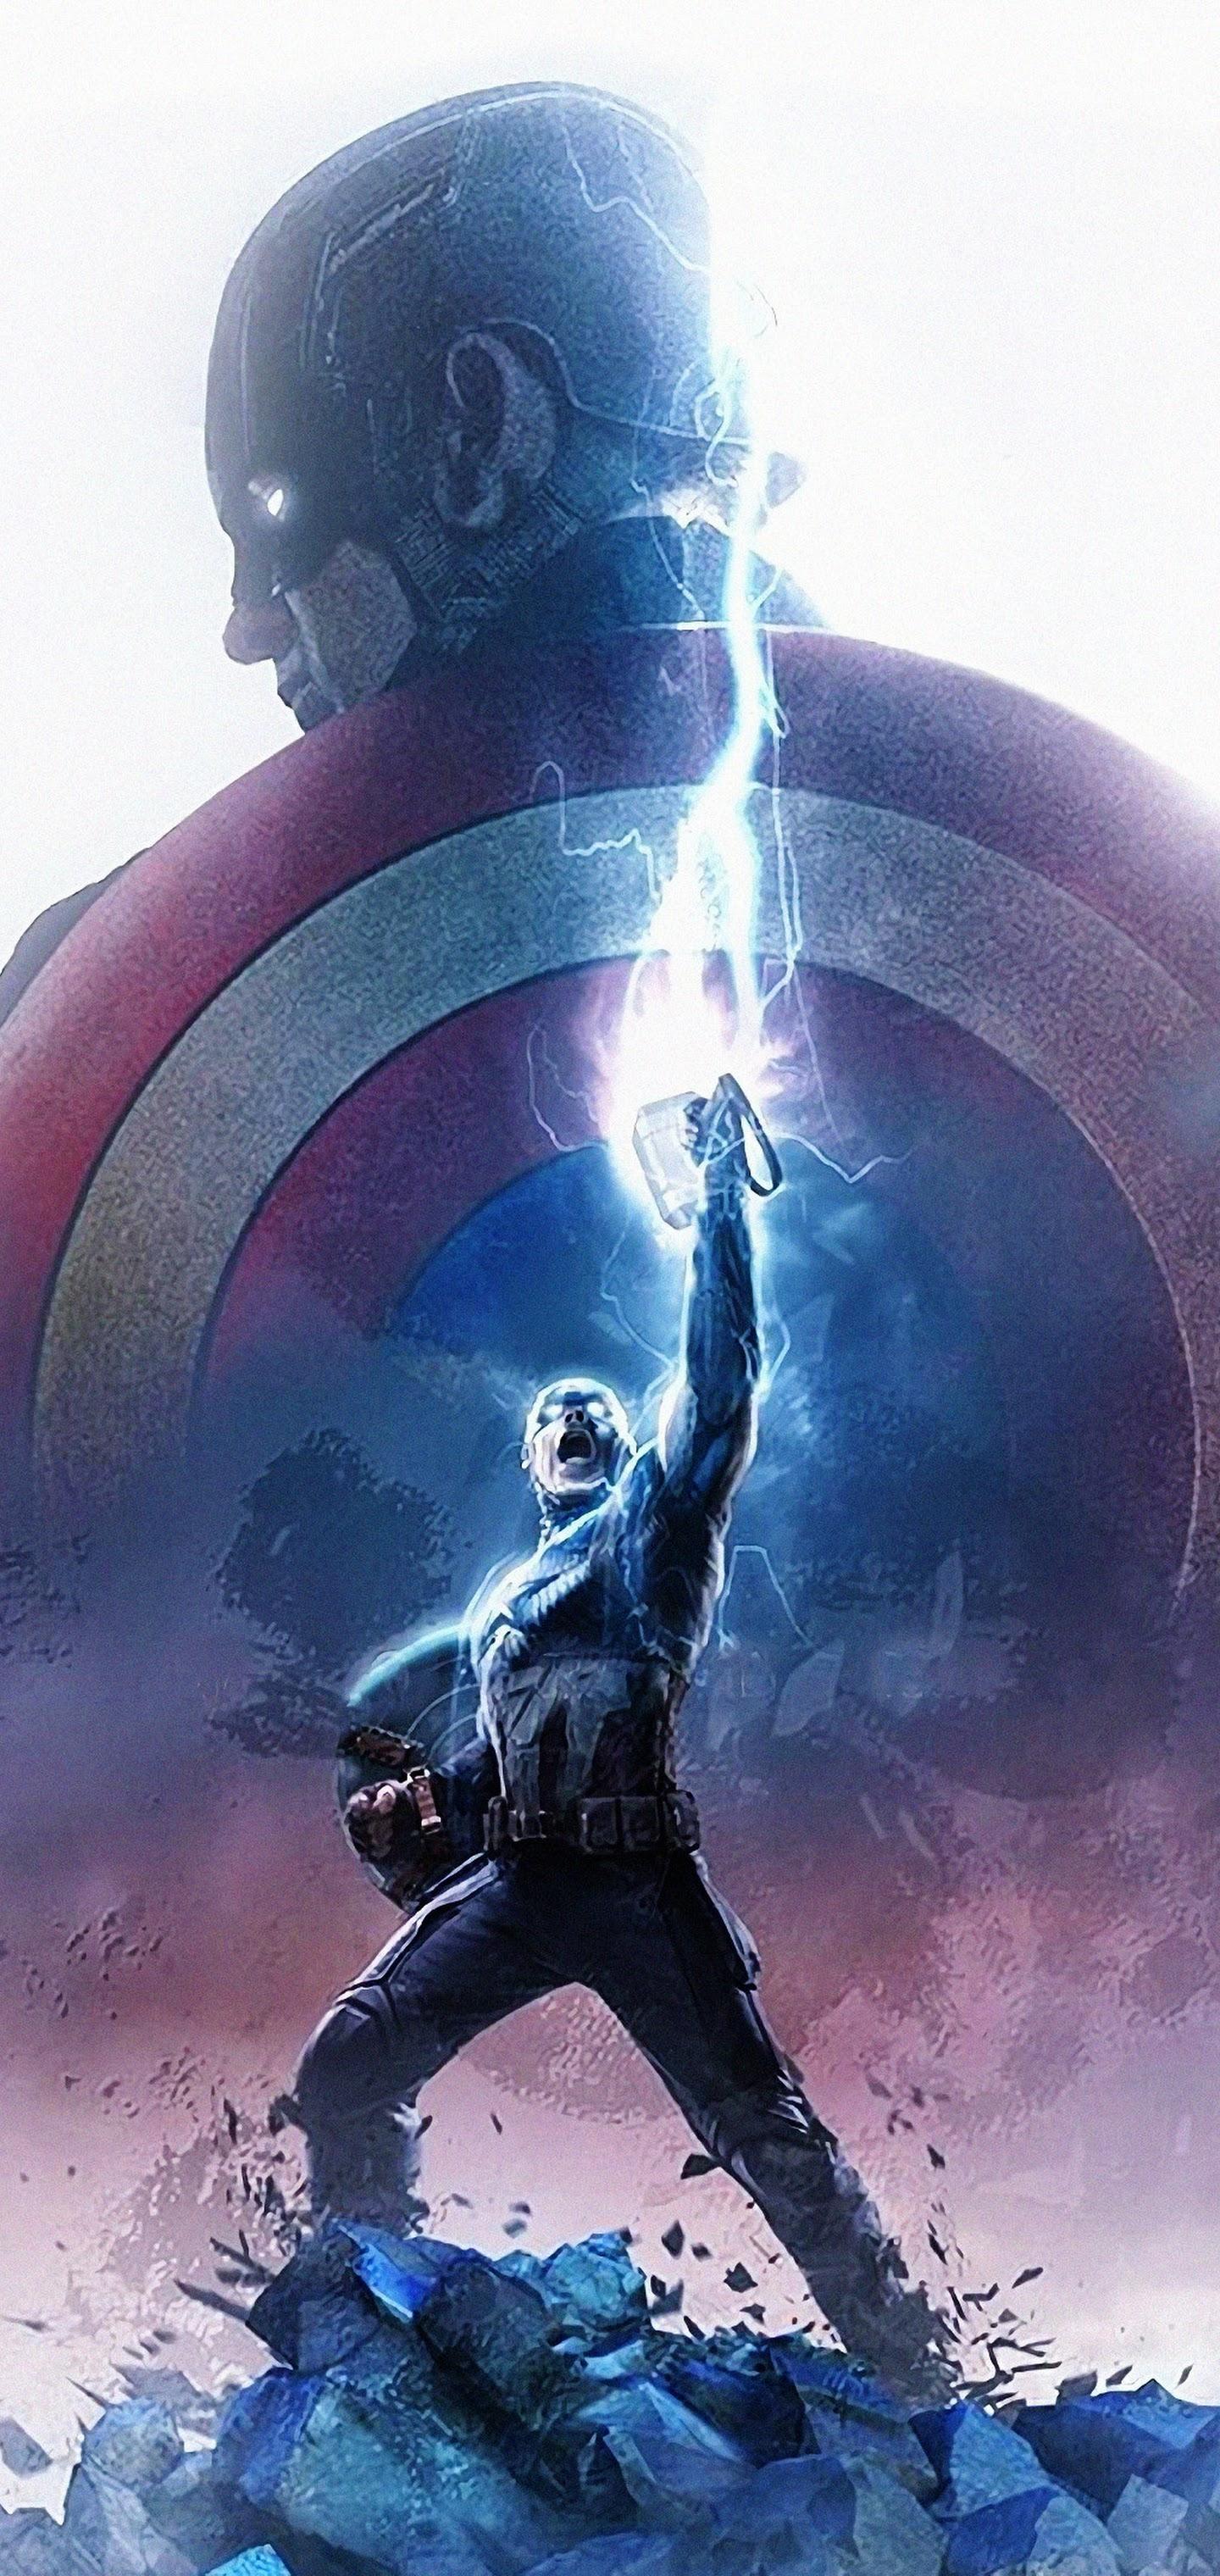 Avengers: Endgame Captain America Thor Hammer Lightning 4K Wallpaper